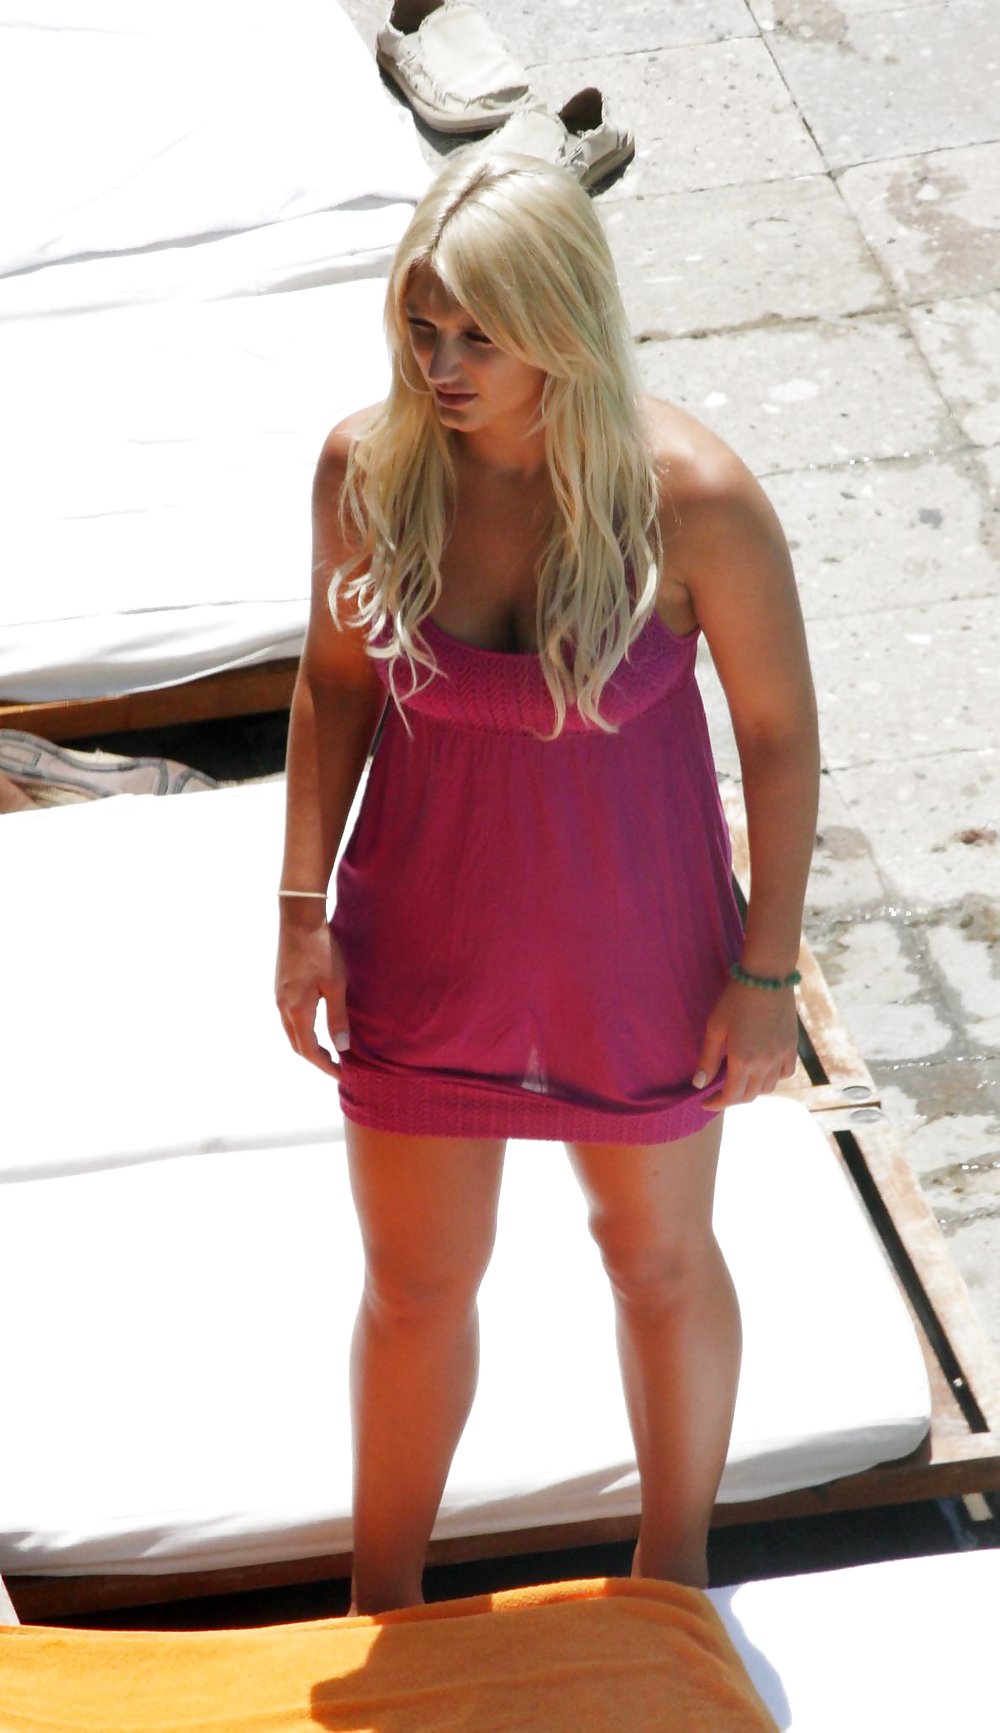 Brooke Hogan in bikini at the pool in Miami #4224134